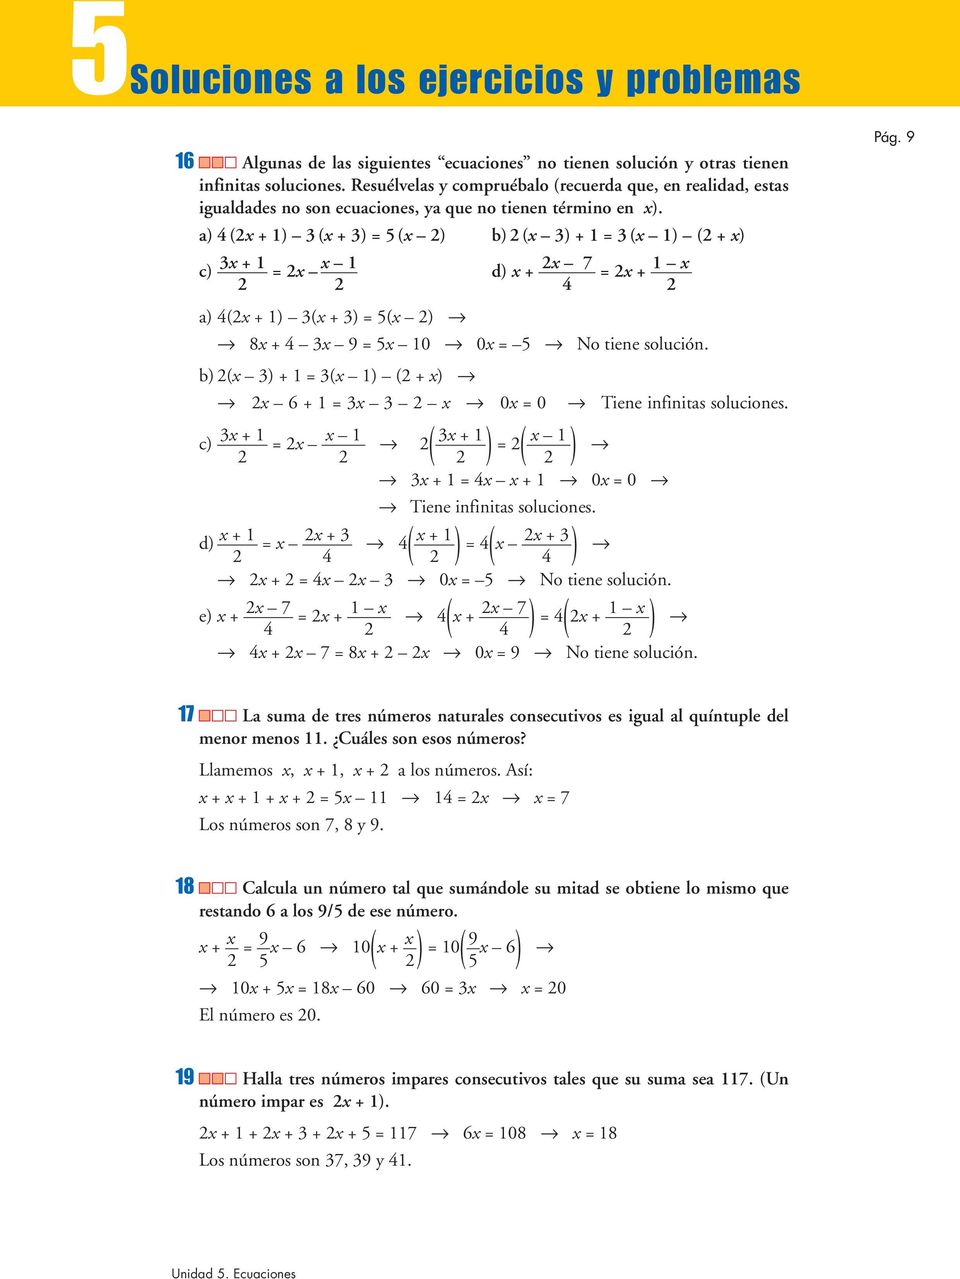 a) 4 ( ) ( ) 5 ( ) b) ( ) ( ) ( ) c) d) 7 4 a) 4( ) ( ) 5( ) 4 9 5 0 0 5 No tiene solución. b) ( ) ( ) ( ) 6 0 0 Tiene infinitas soluciones. c) ( ) ( ) 4 0 0 Tiene infinitas soluciones.